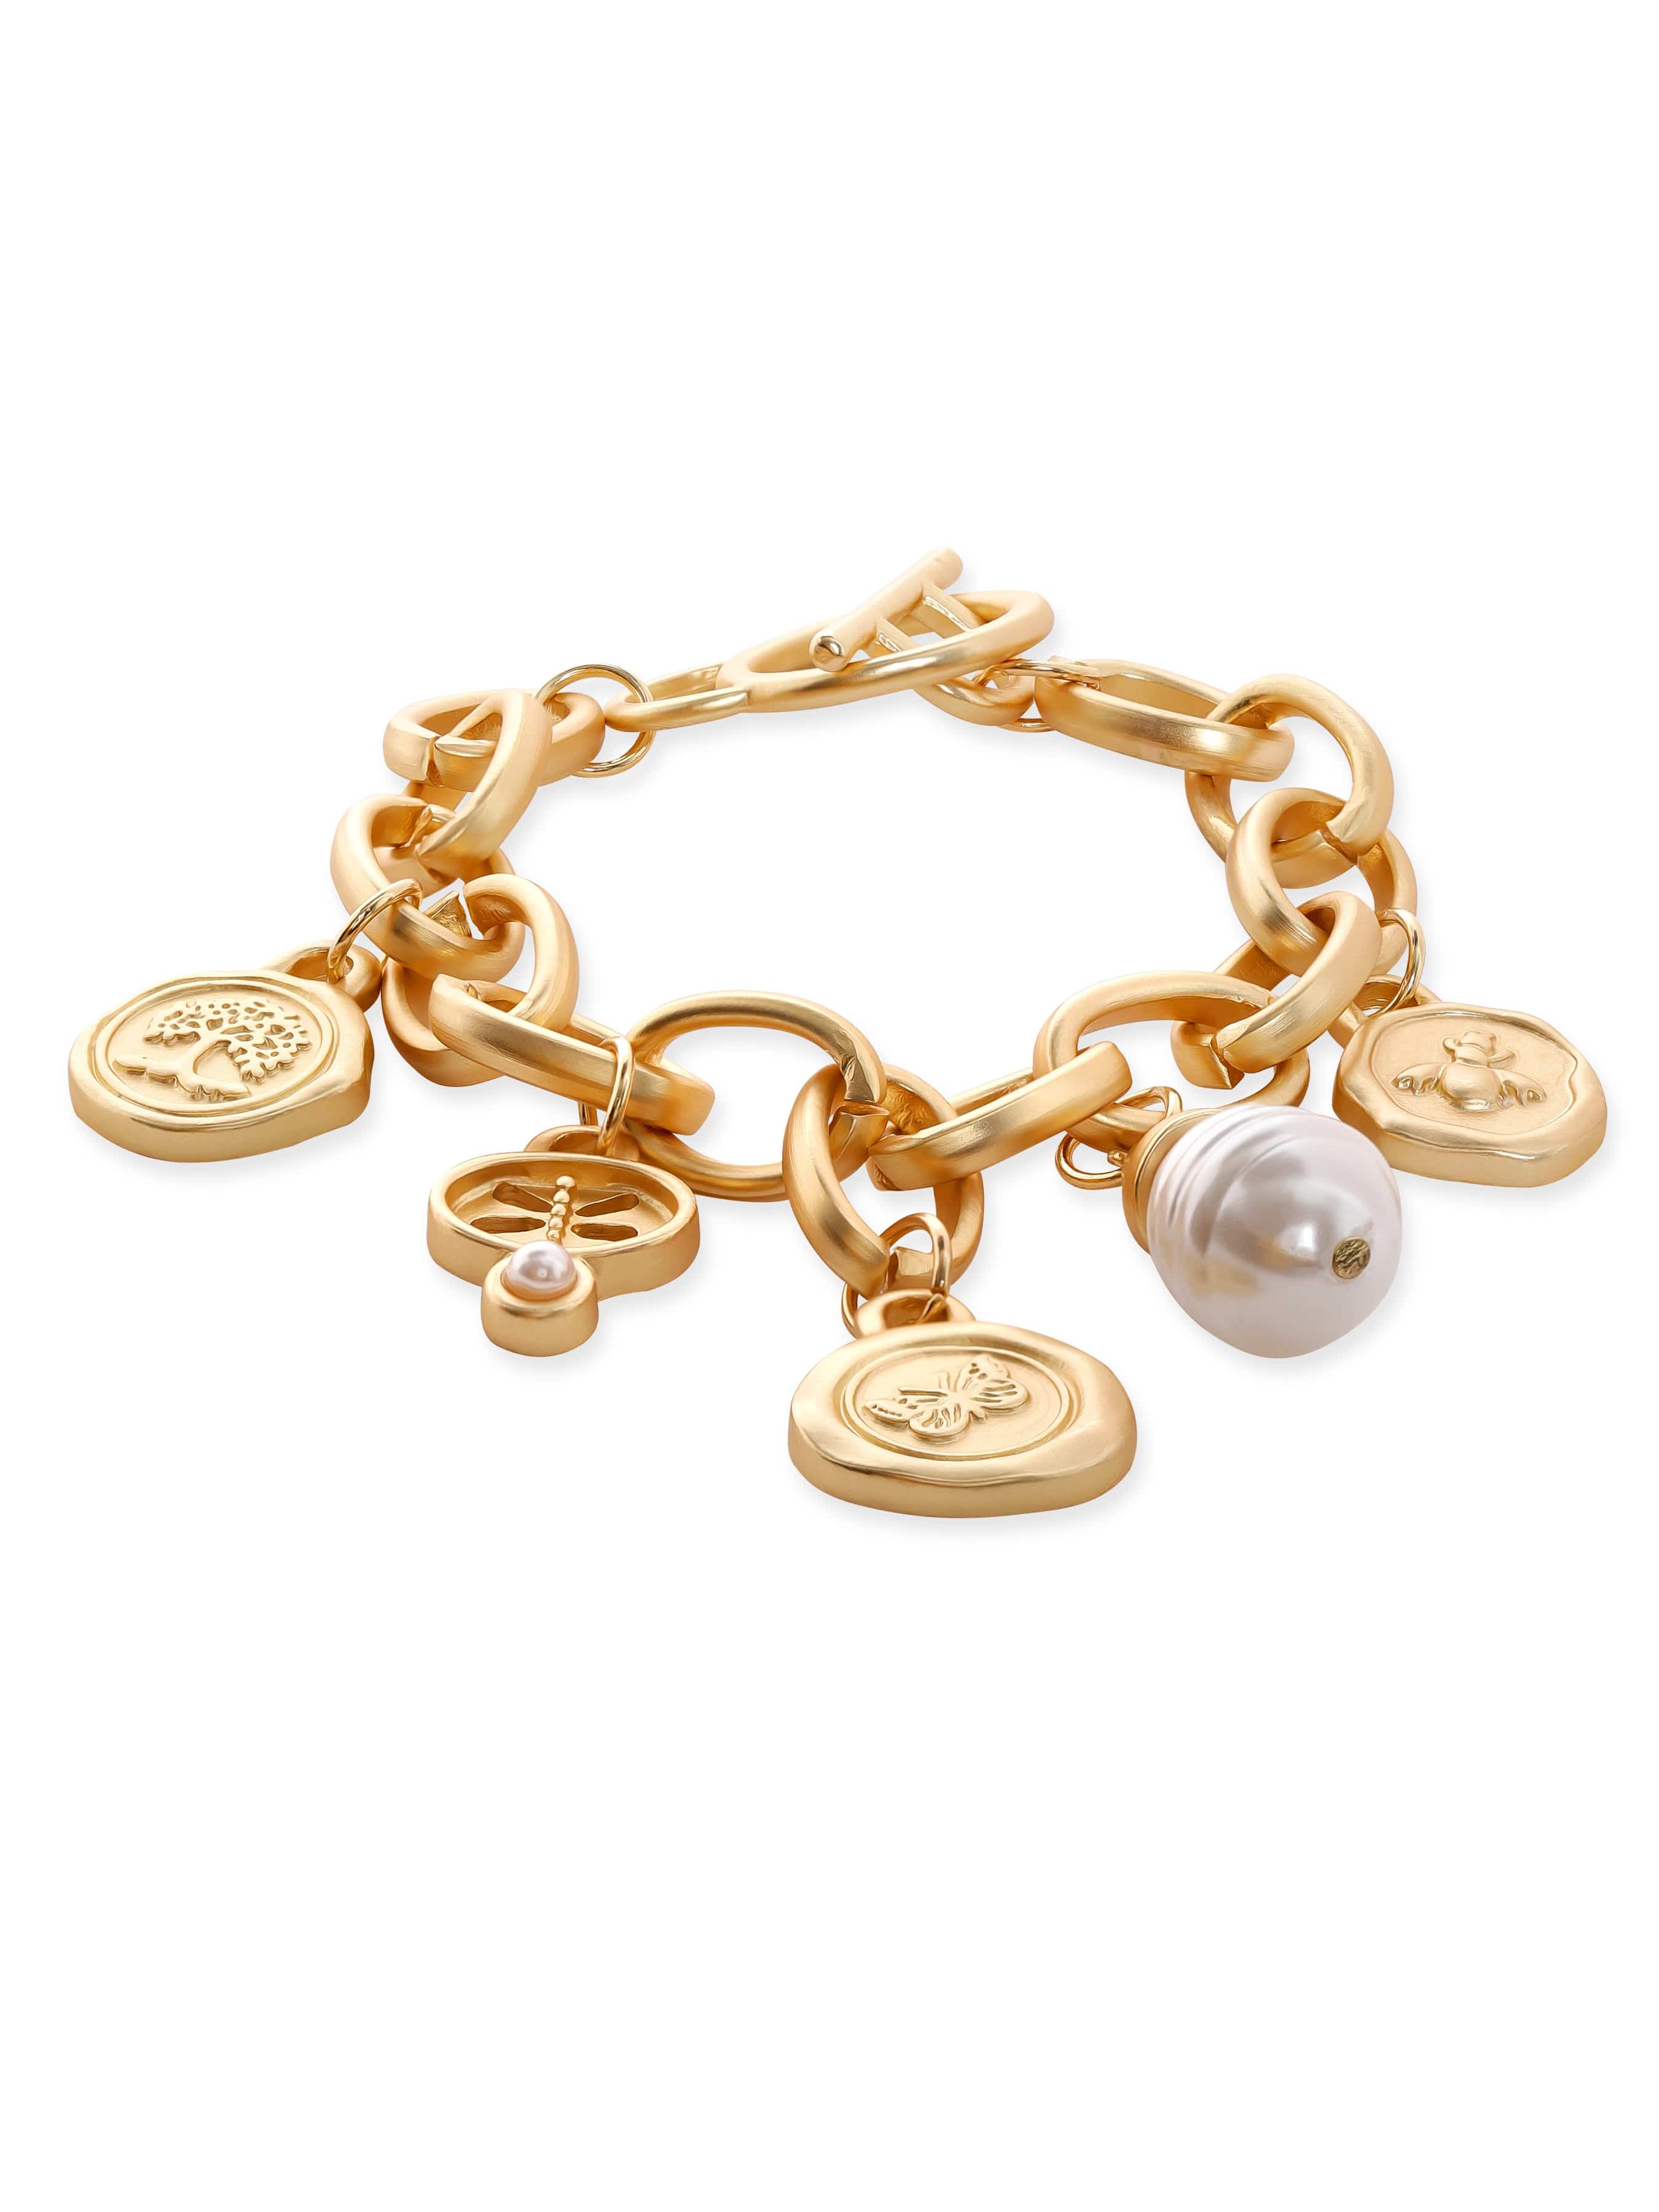 Elegant Gold Beaded Charm Bracelet for Women - BR-429